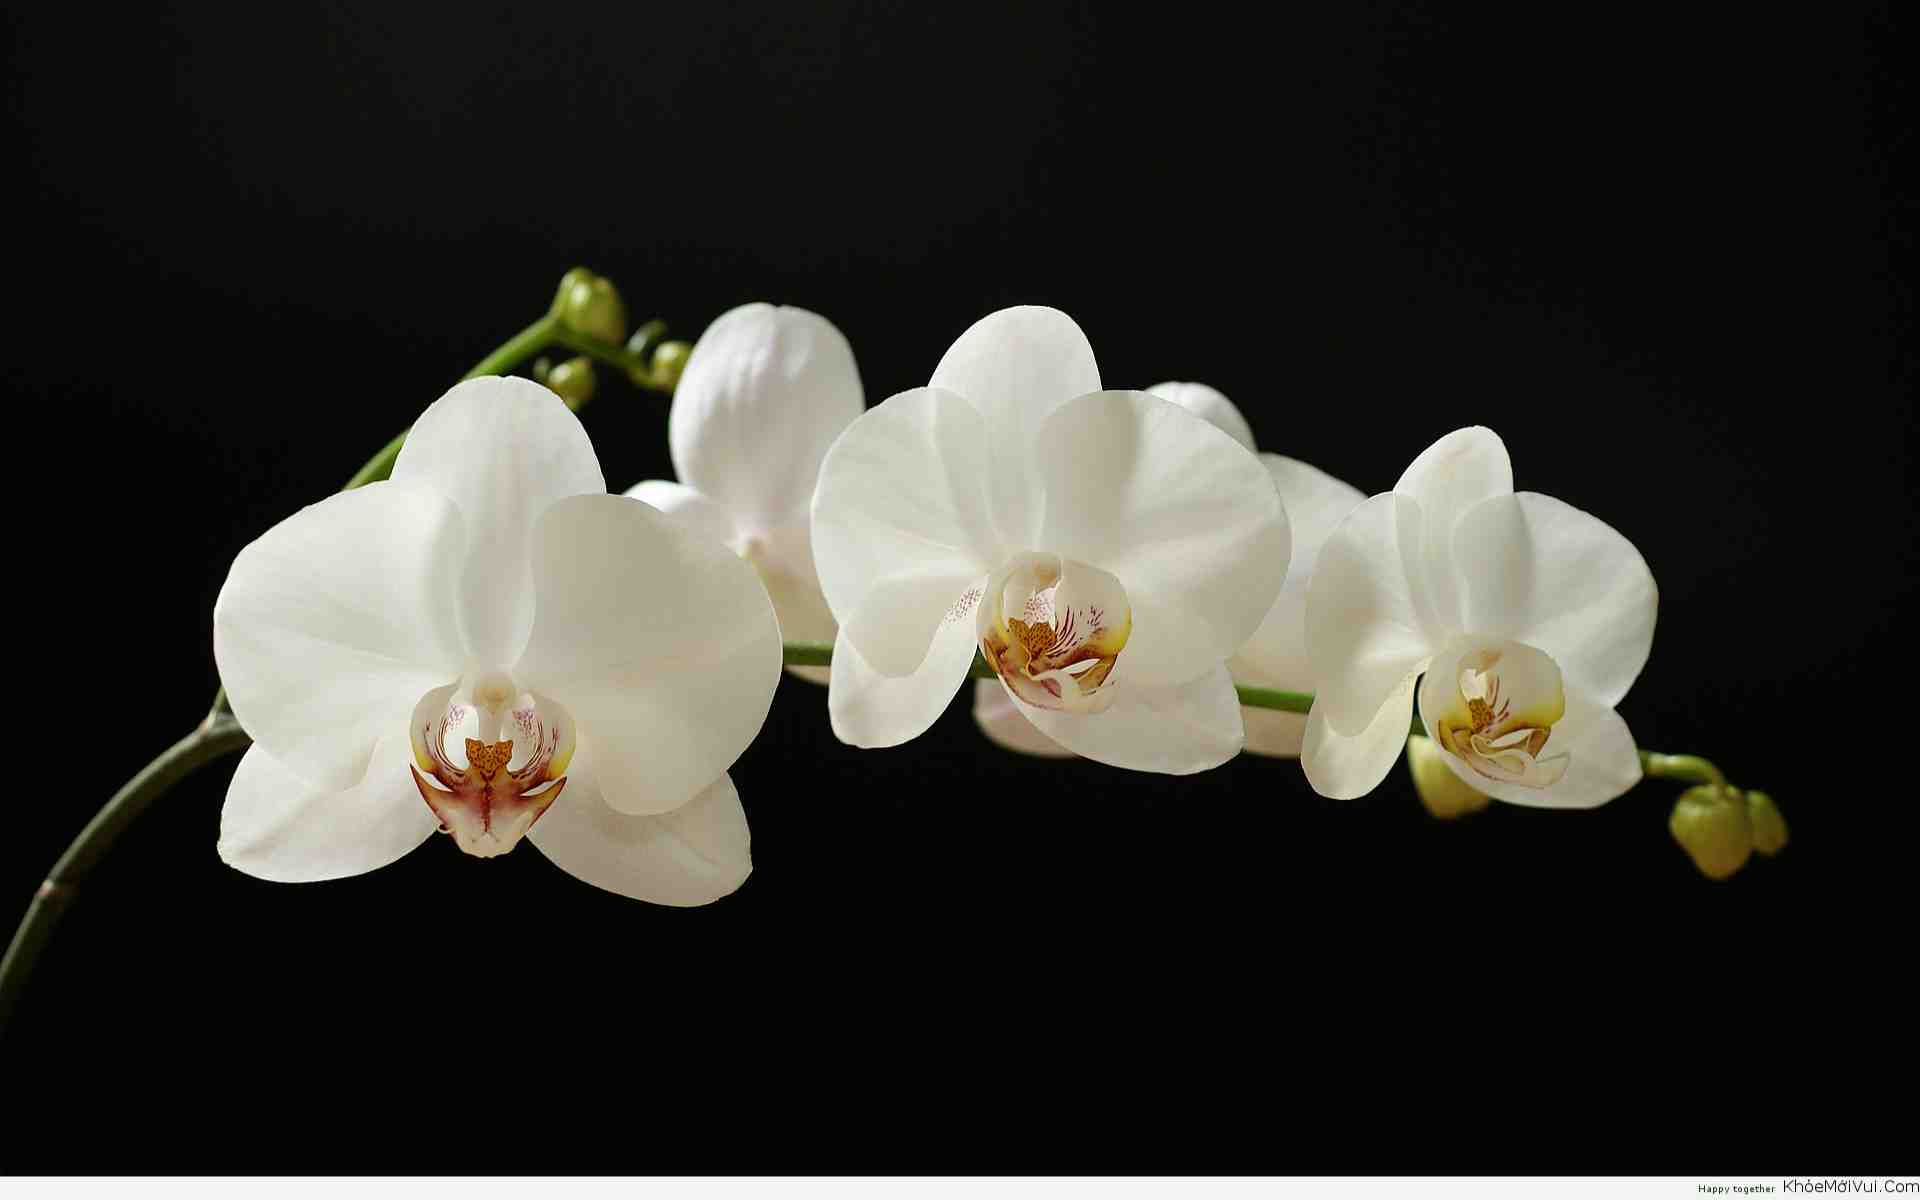 Hoa phong lan là một trong những loại hoa được yêu thích nhất bởi vẻ đẹp quyến rũ và khả năng thích nghi cao. Cùng xem ảnh hoa phong lan để nhận được thật nhiều cảm hứng để chăm sóc vườn hoa của mình.